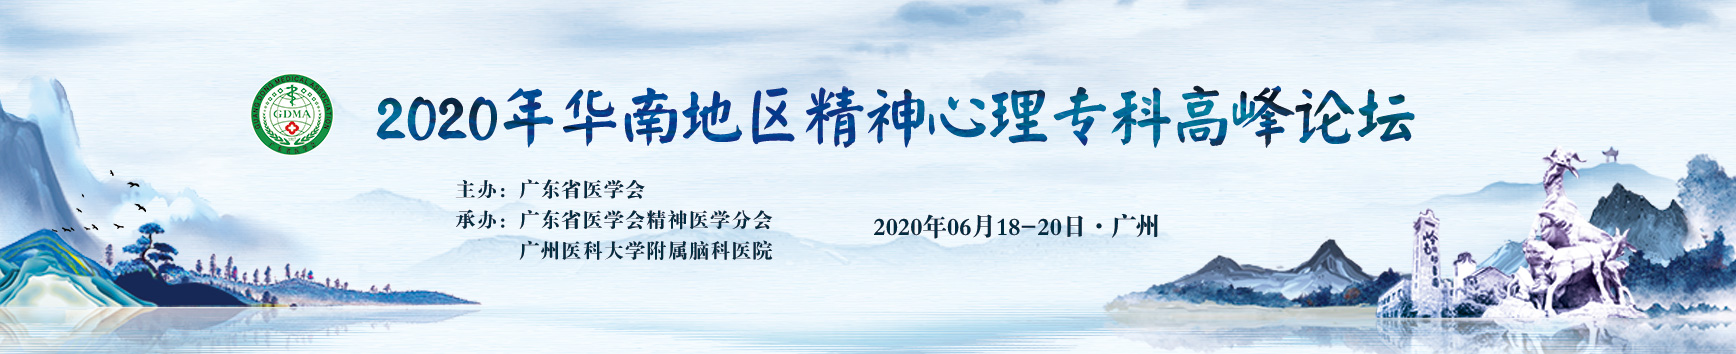 2020年华南地区精神心理专科高峰论坛